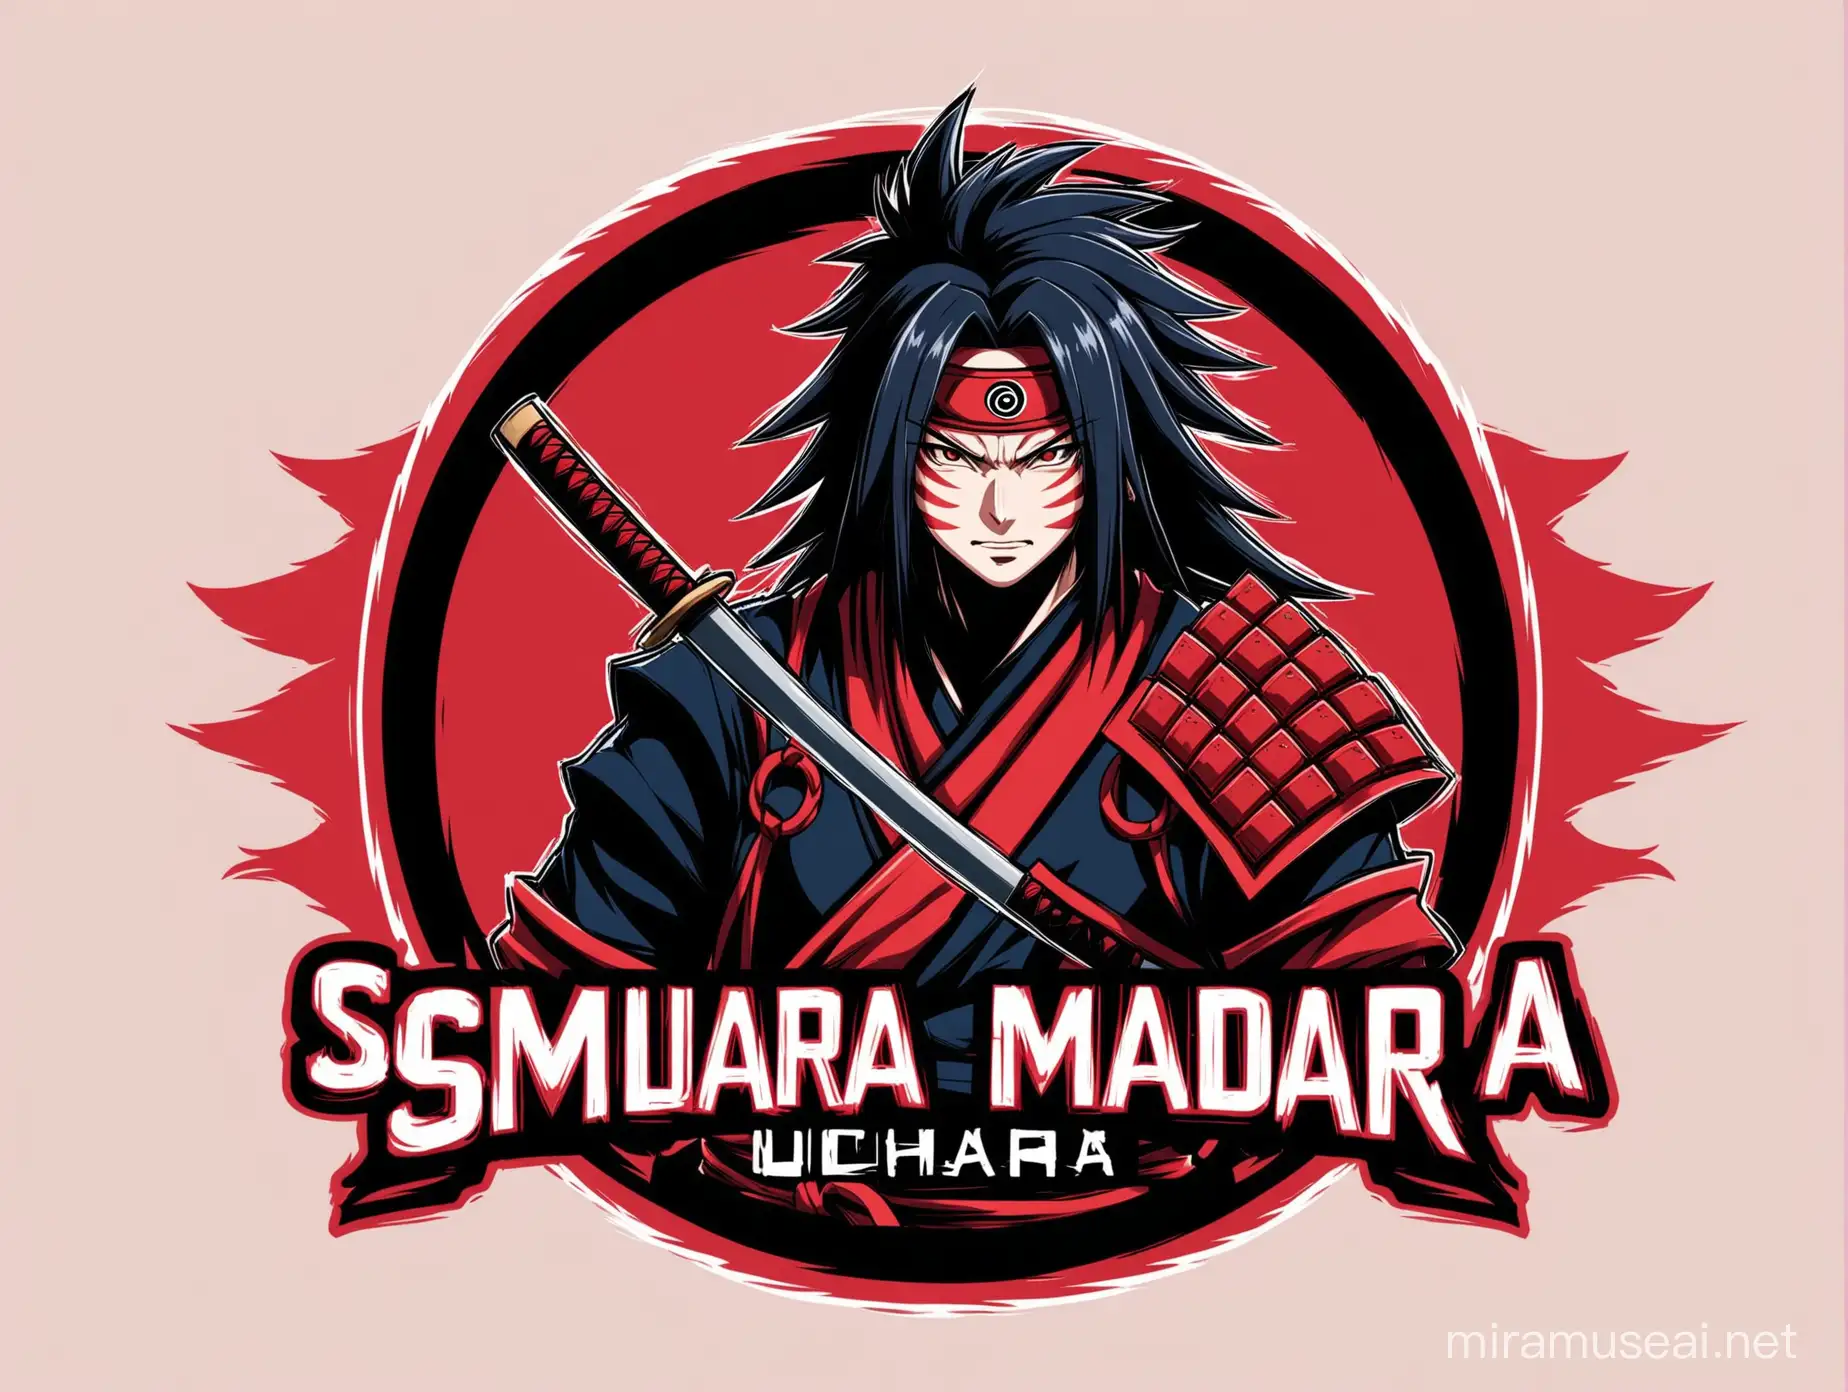 logo for a gamer who loves anime character named uchiha madara samurai


